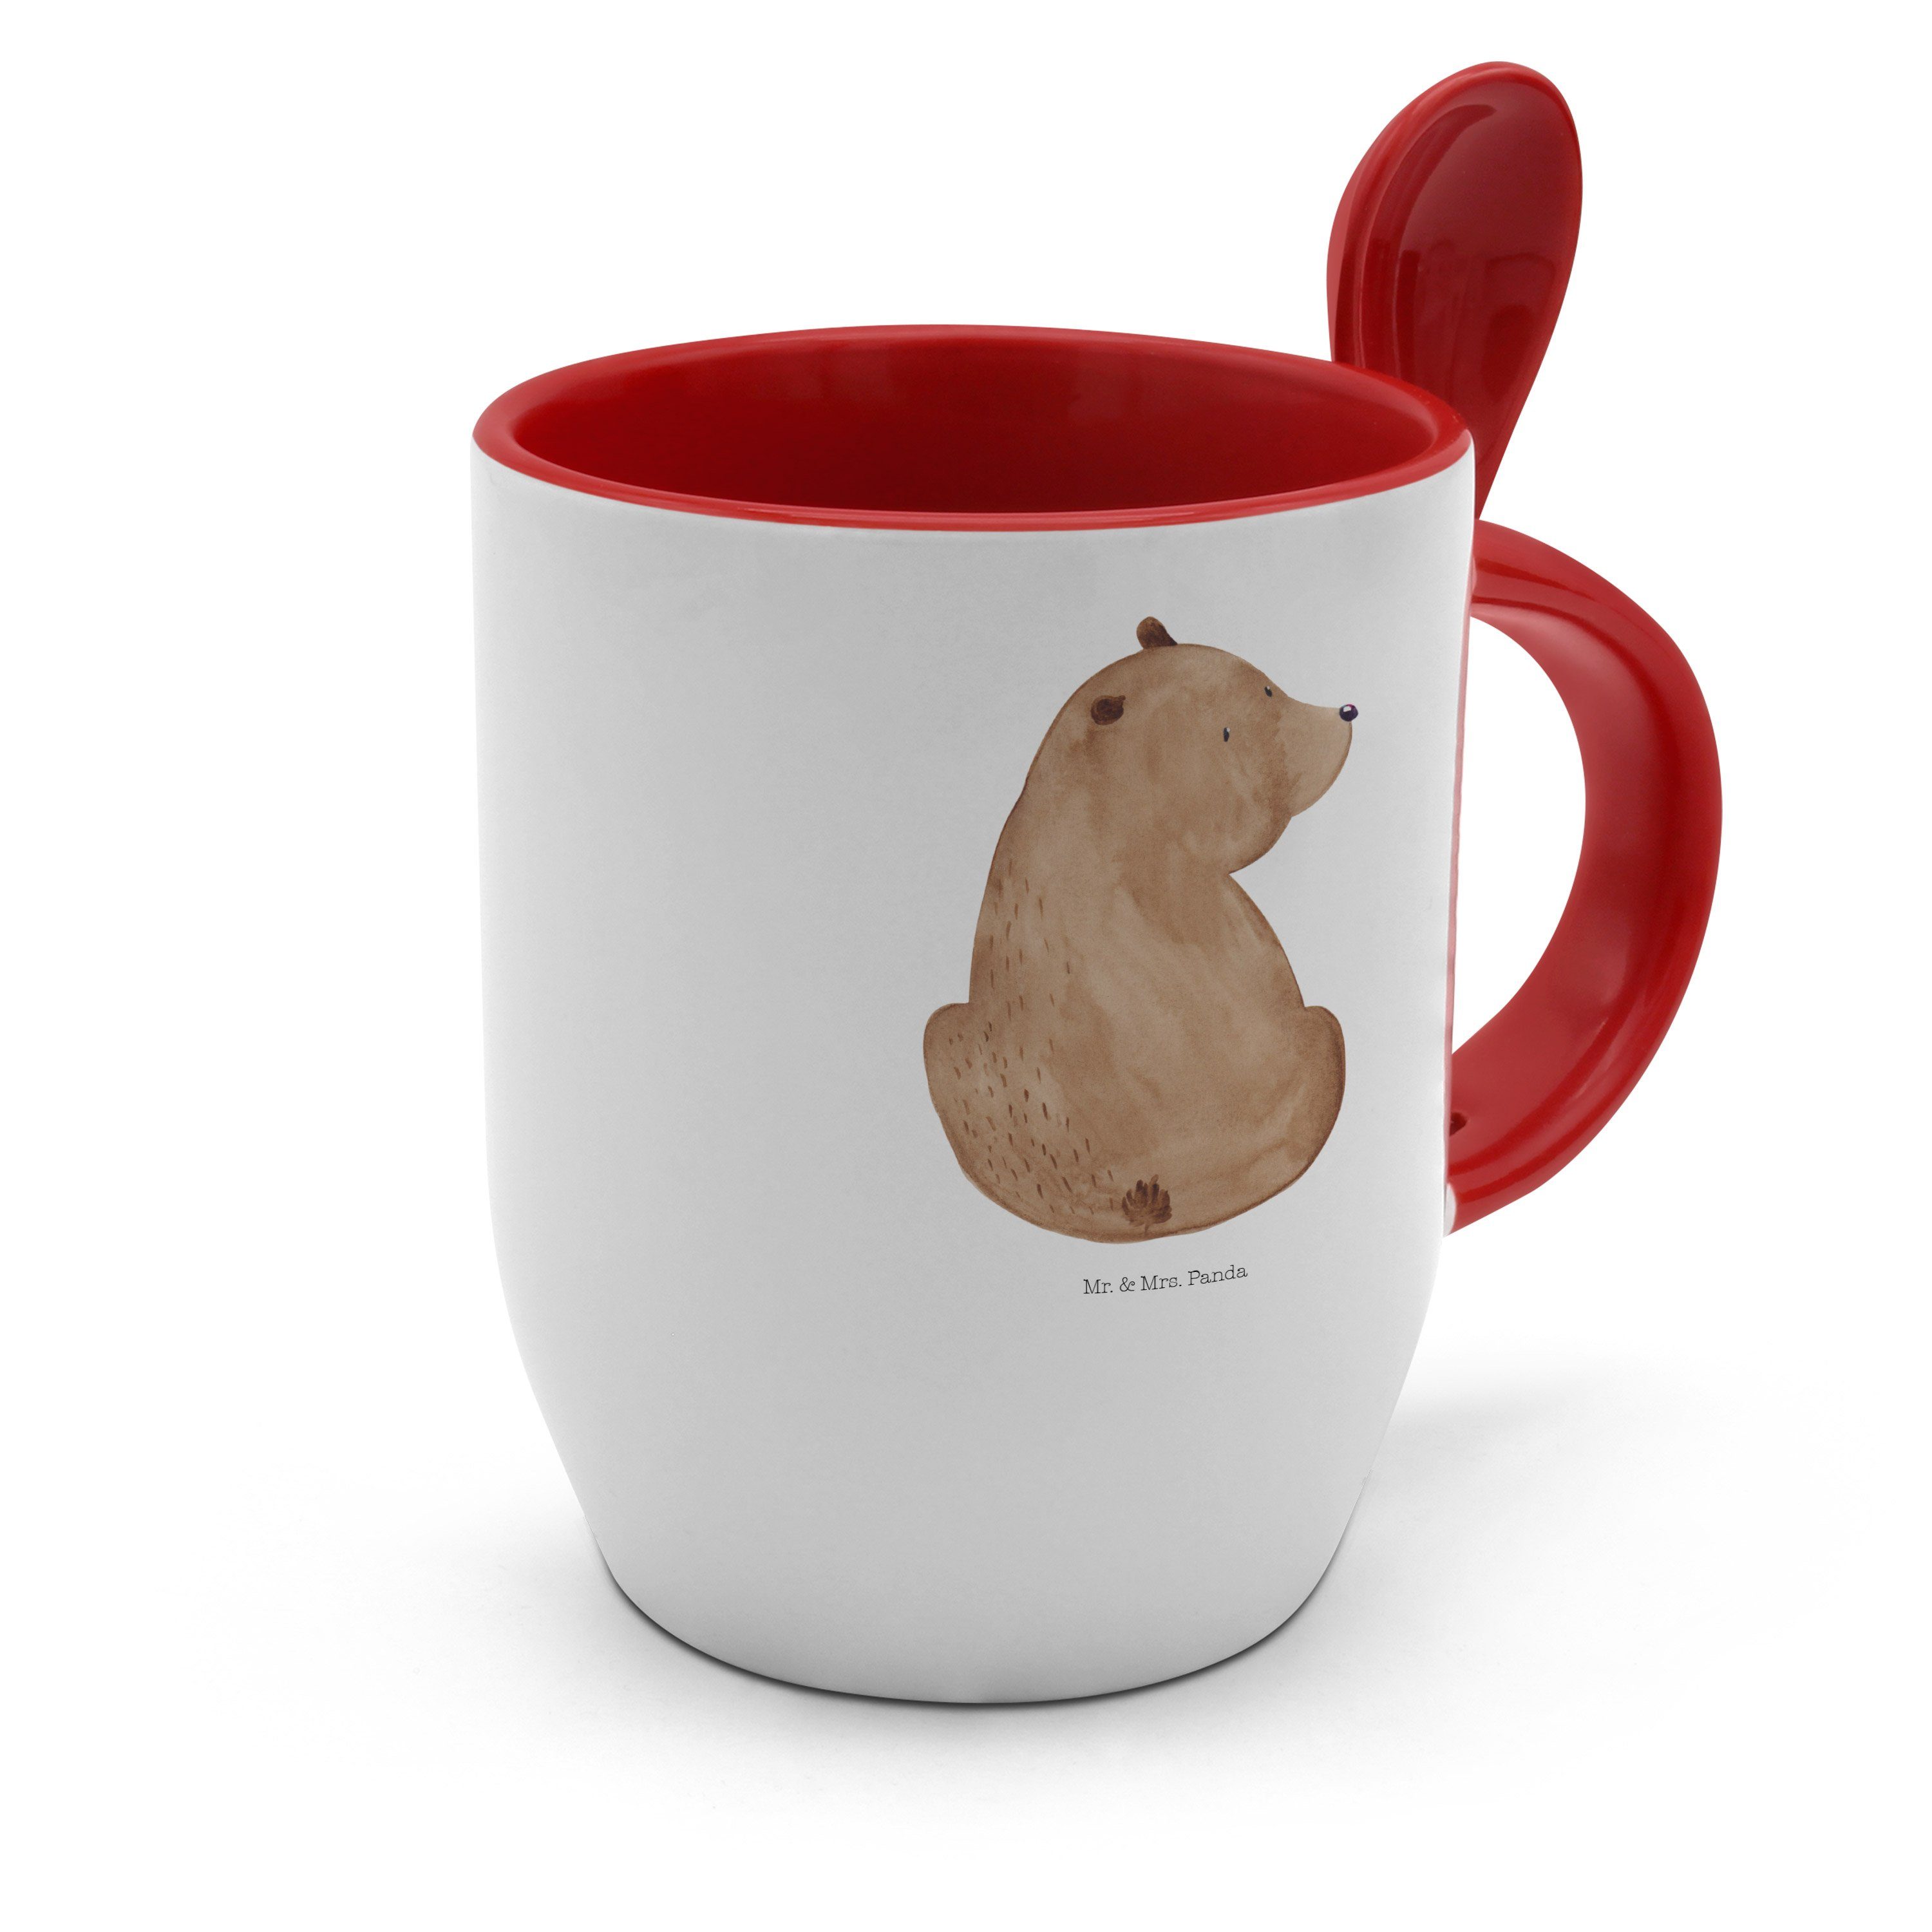 Teddybär, Mr. - Tasse mit Bär & Mrs. Panda Keramik Weiß Tasse Löffel, Geschenk, Weis, Schulterblick -